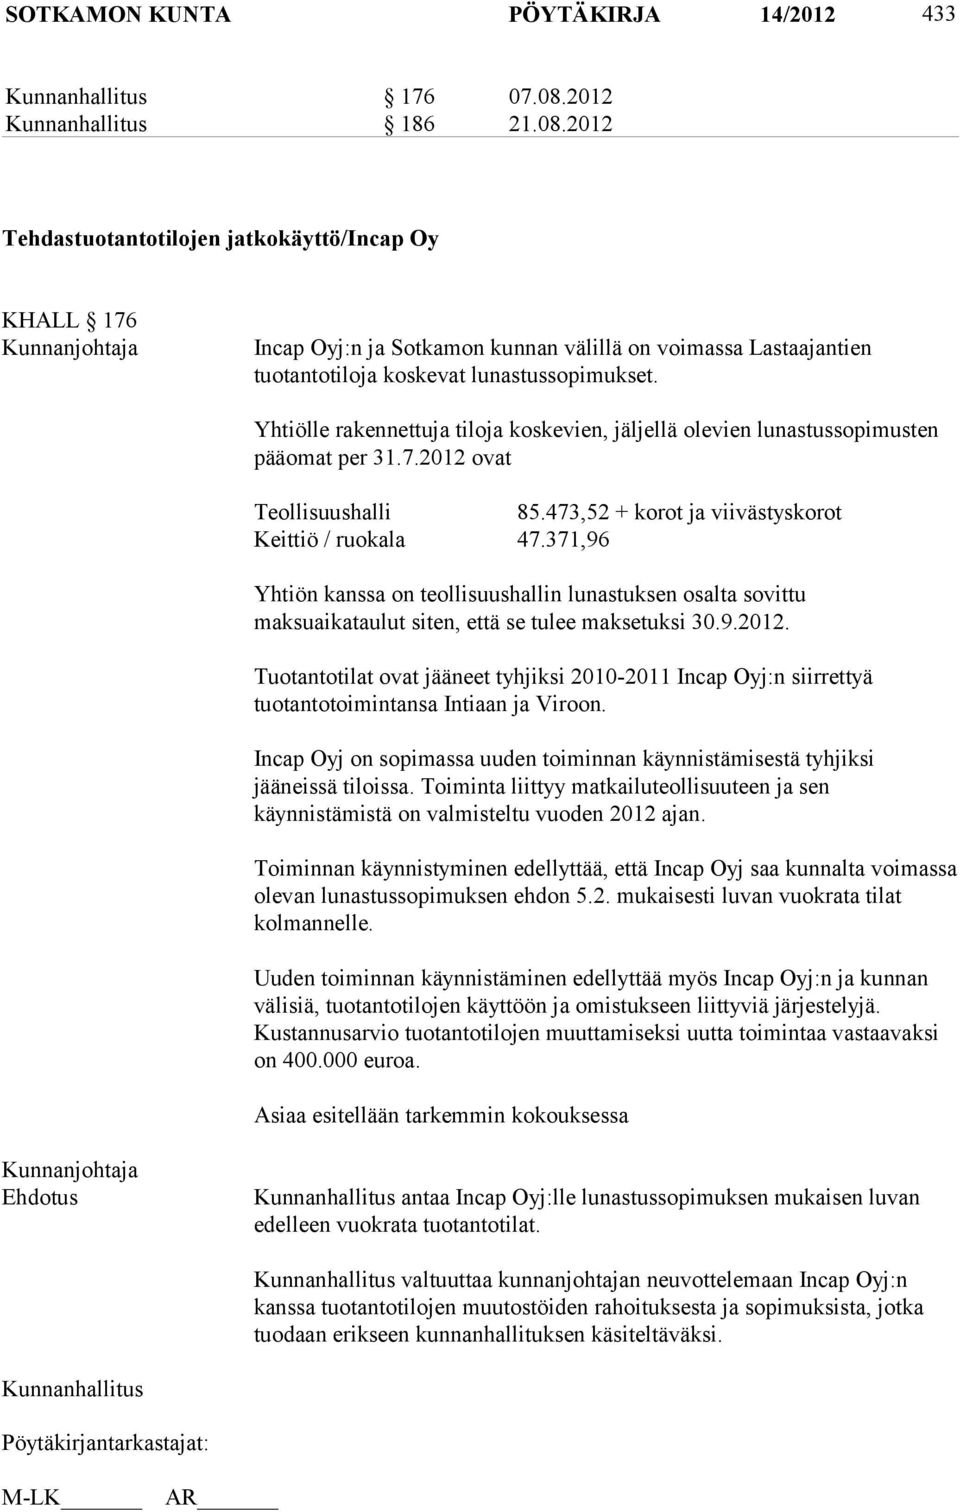 Yhtiölle rakennettuja tiloja koskevien, jäljellä olevien lunastussopimusten pääomat per 31.7.2012 ovat Teollisuushalli 85.473,52 + korot ja viivästyskorot Keittiö / ruokala 47.